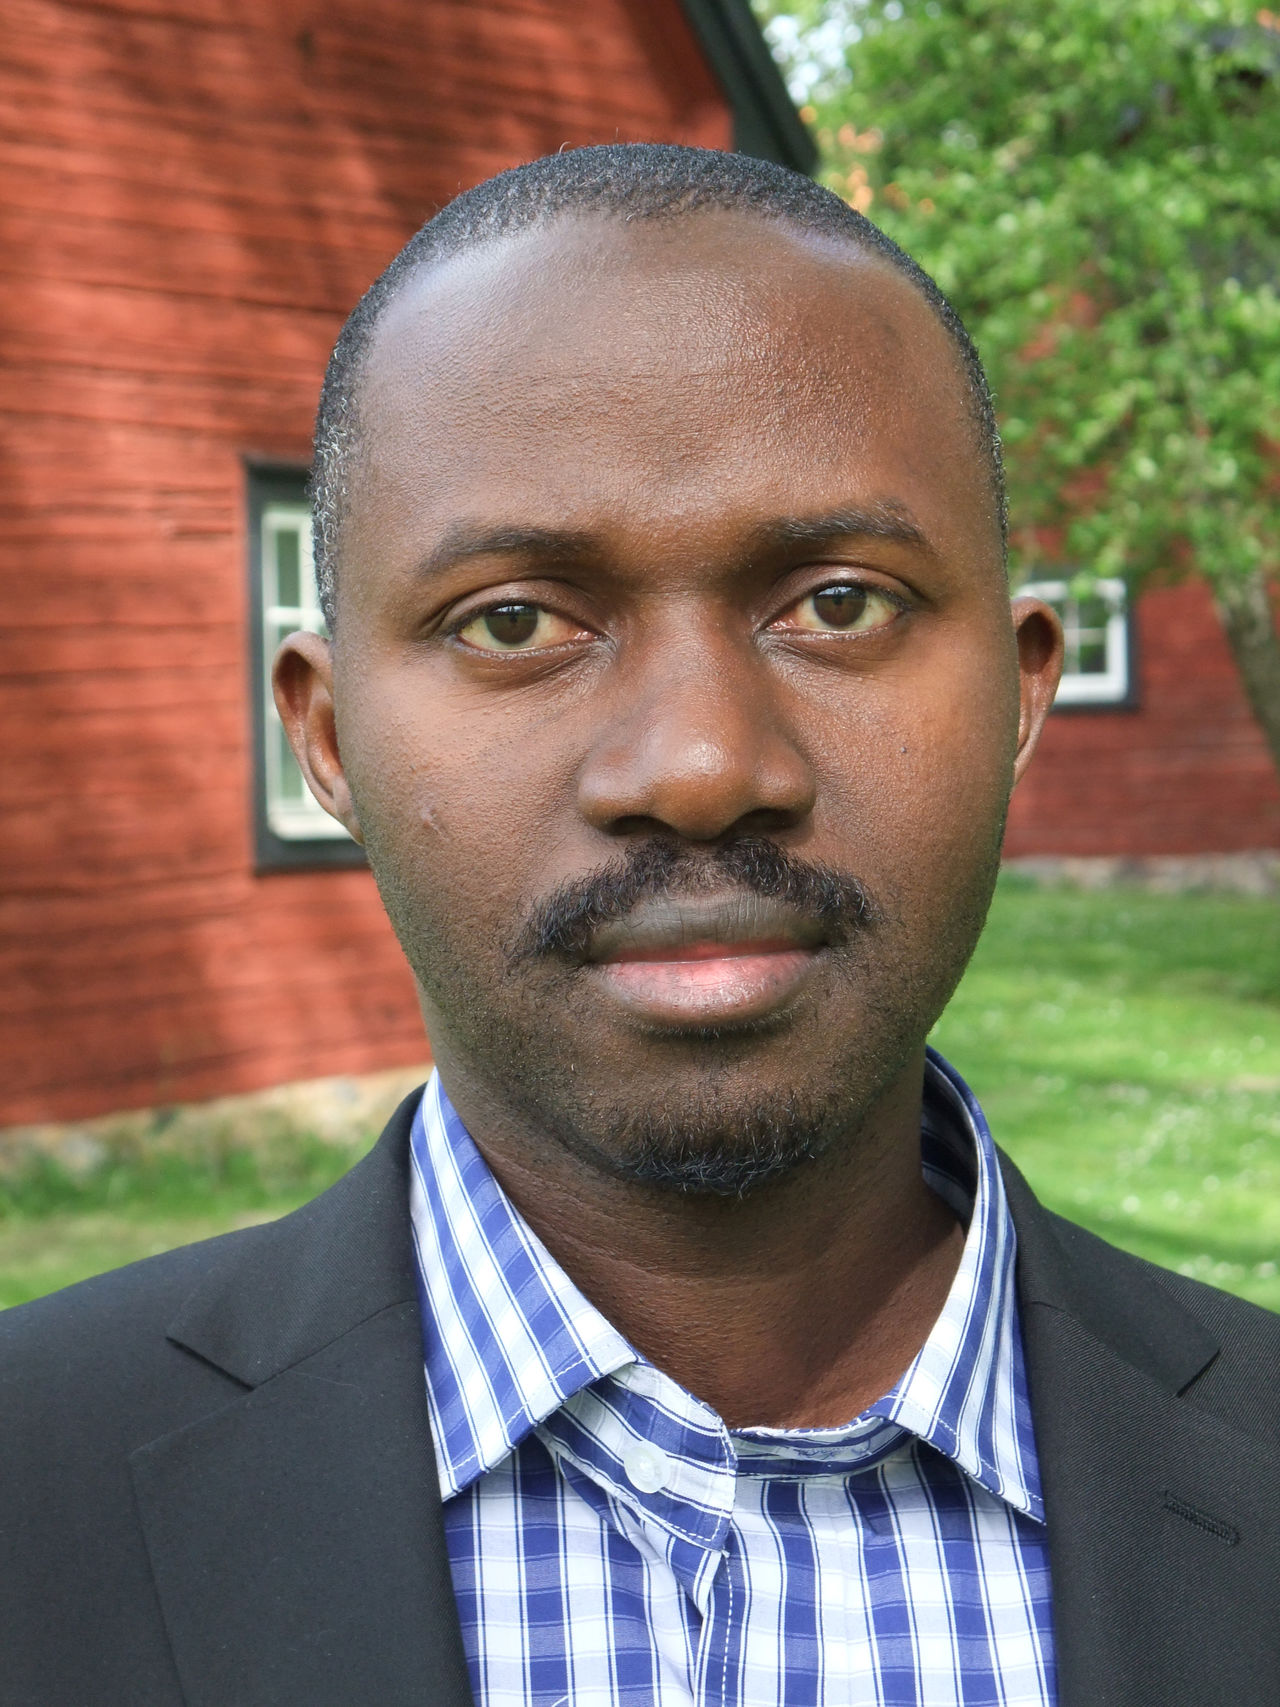 Joseph Nzabanita, doktorand inom UR-Sweden programmet, från University of Rwanda. Från disputationen i matematisk statistik 2015-06-11.